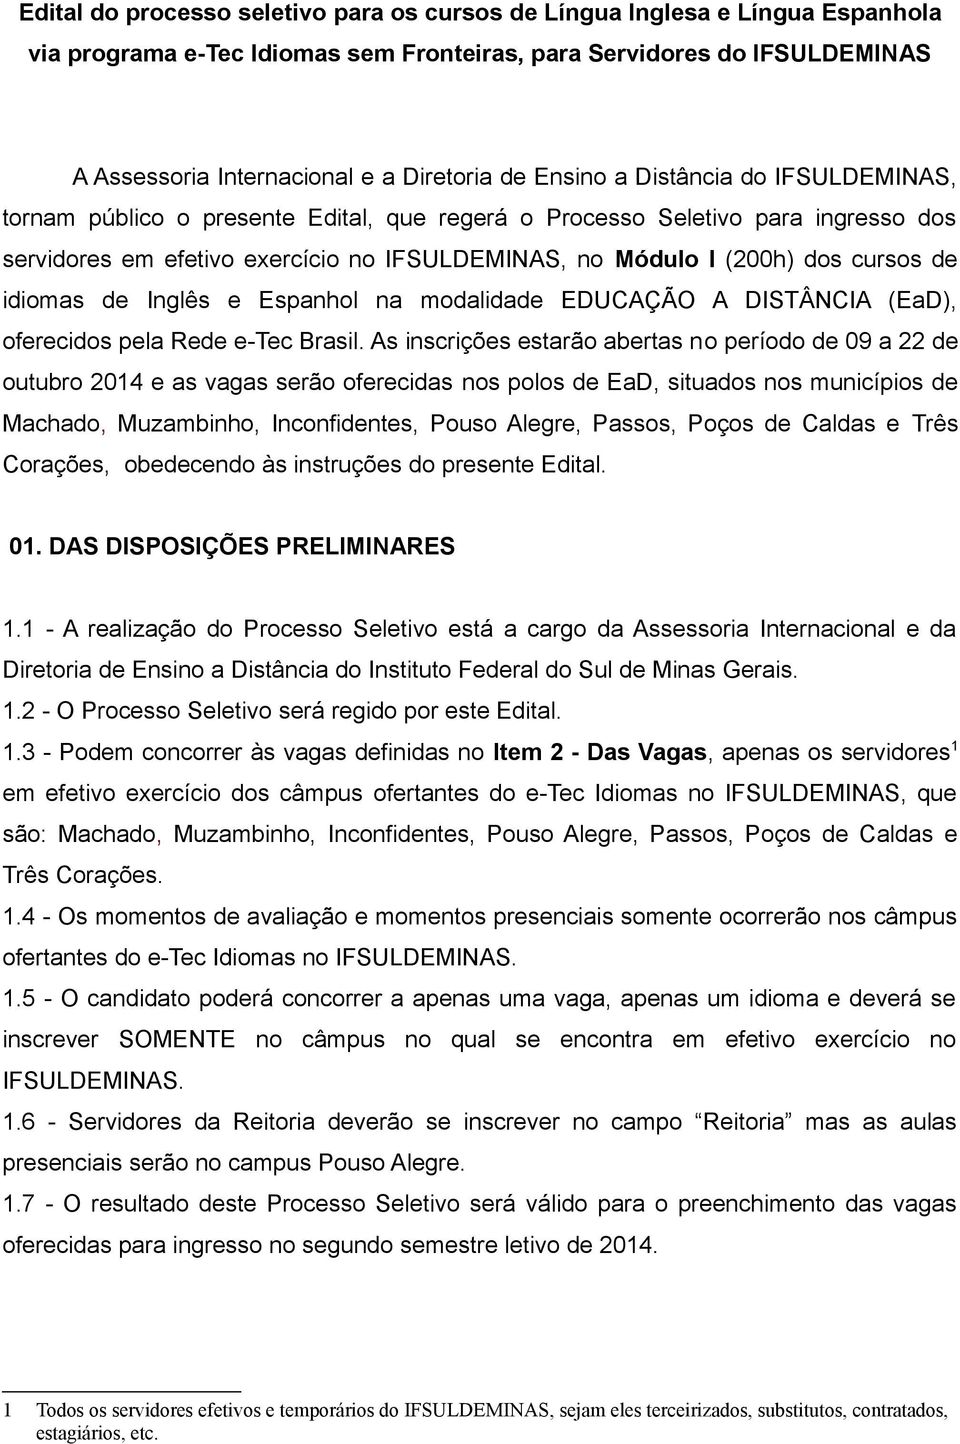 de idiomas de Inglês e Espanhol na modalidade EDUCAÇÃO A DISTÂNCIA (EaD), oferecidos pela Rede e-tec Brasil.